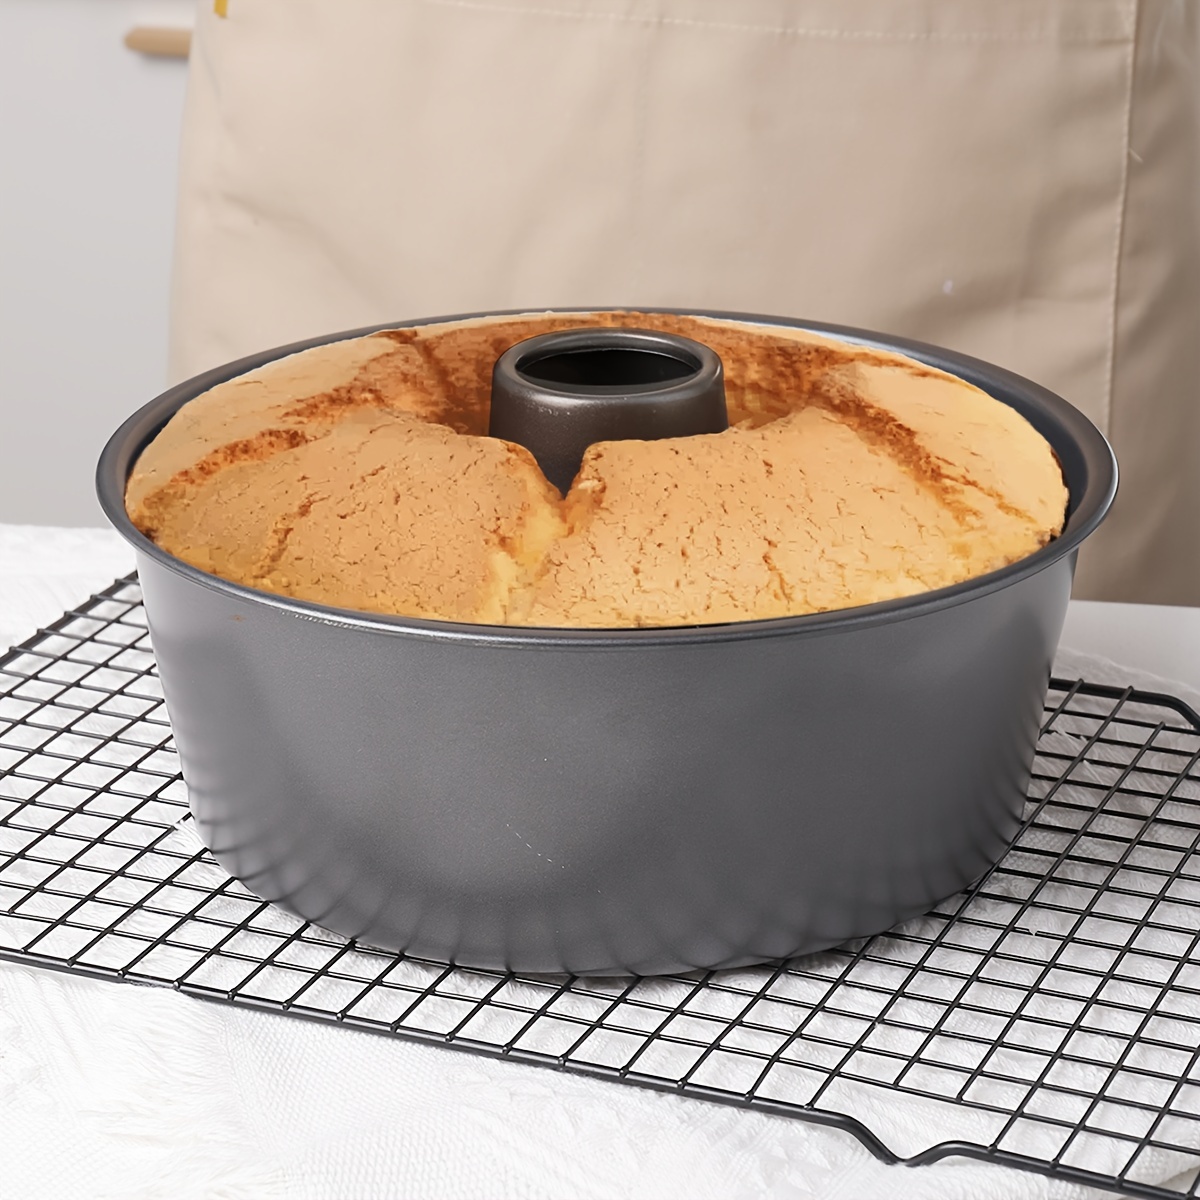 RING MOLD BAKING PAN / TUBE CAKE PAN 10